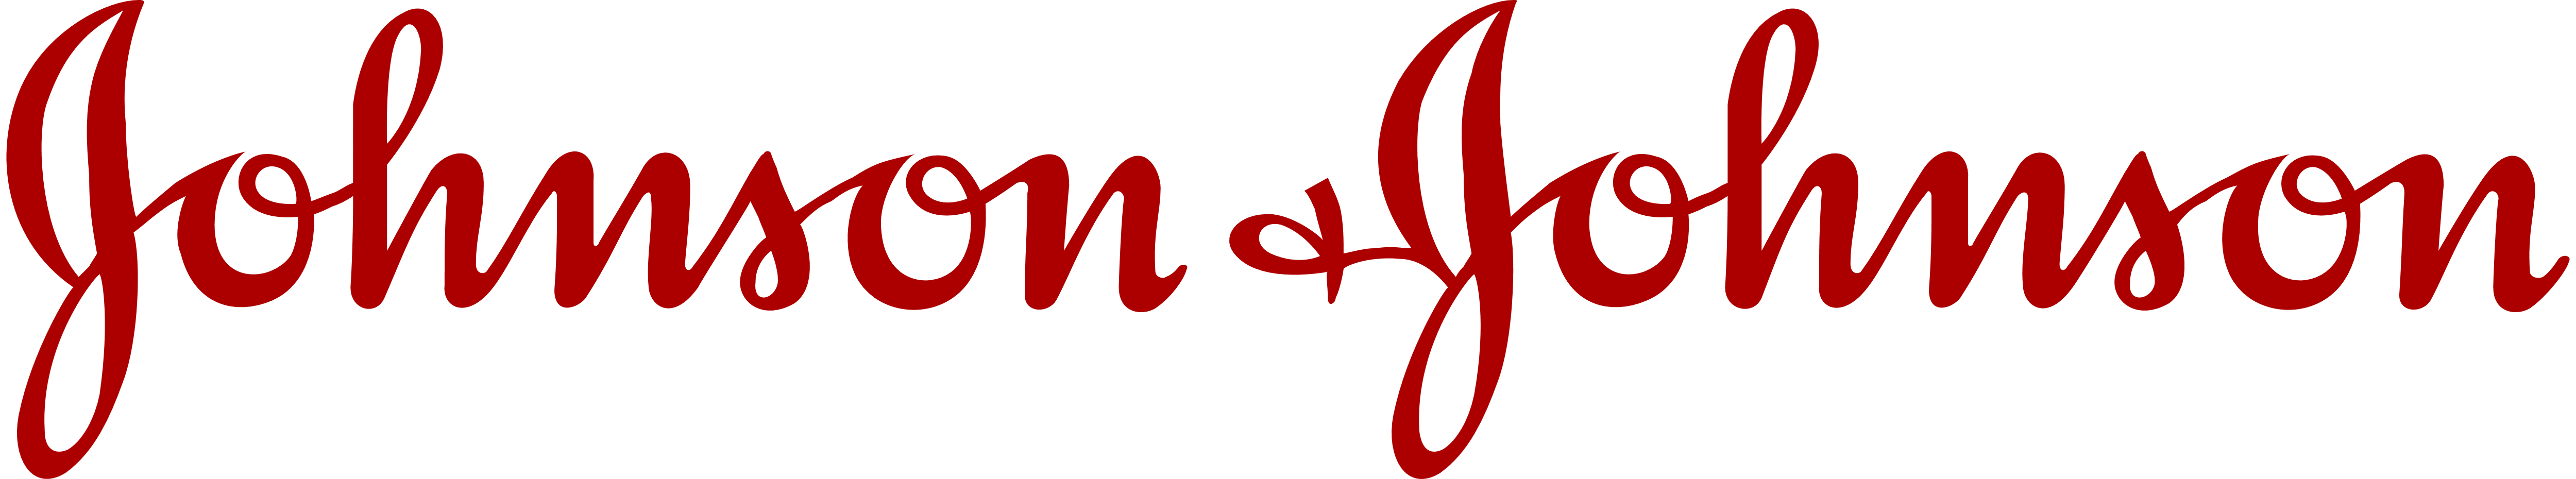 Johnson and Johnson Logo - Johnson & Johnson – Logos Download